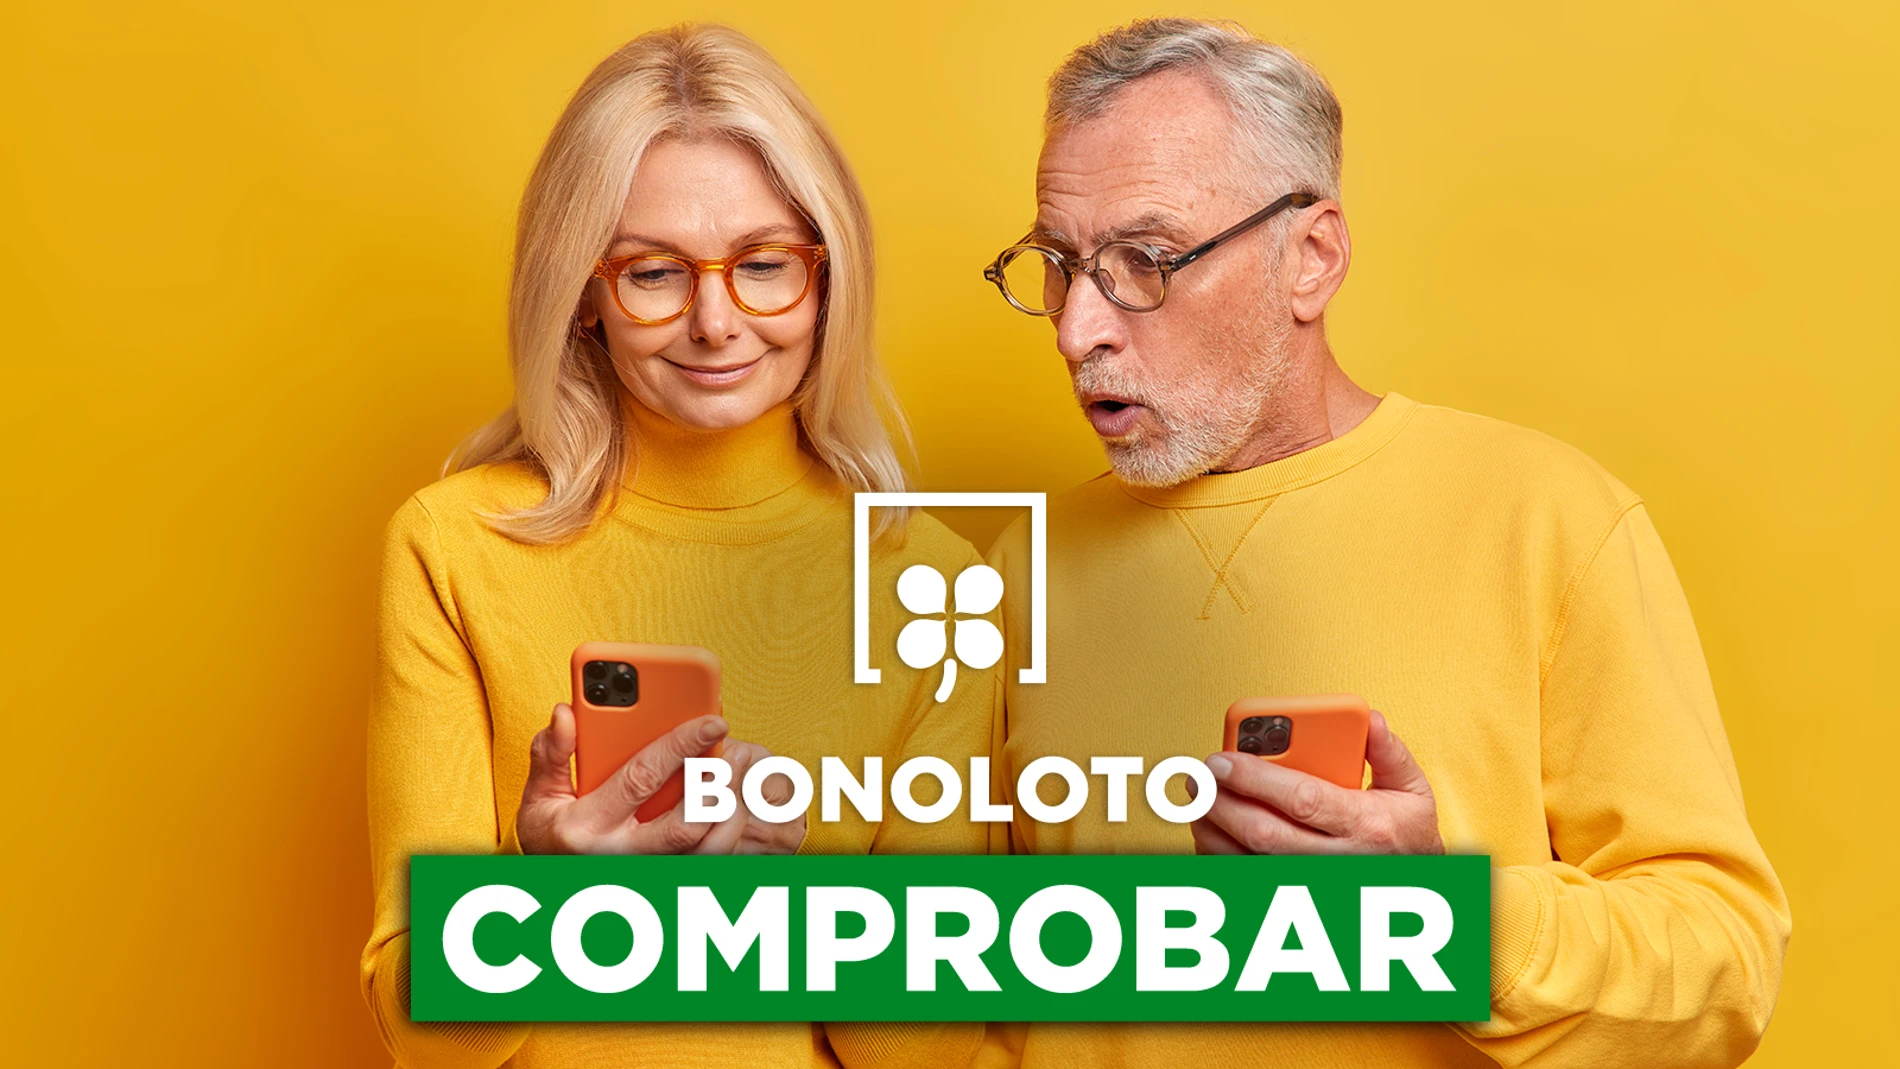 Bonoloto: comprobar hoy, viernes 18 de noviembre de 2022